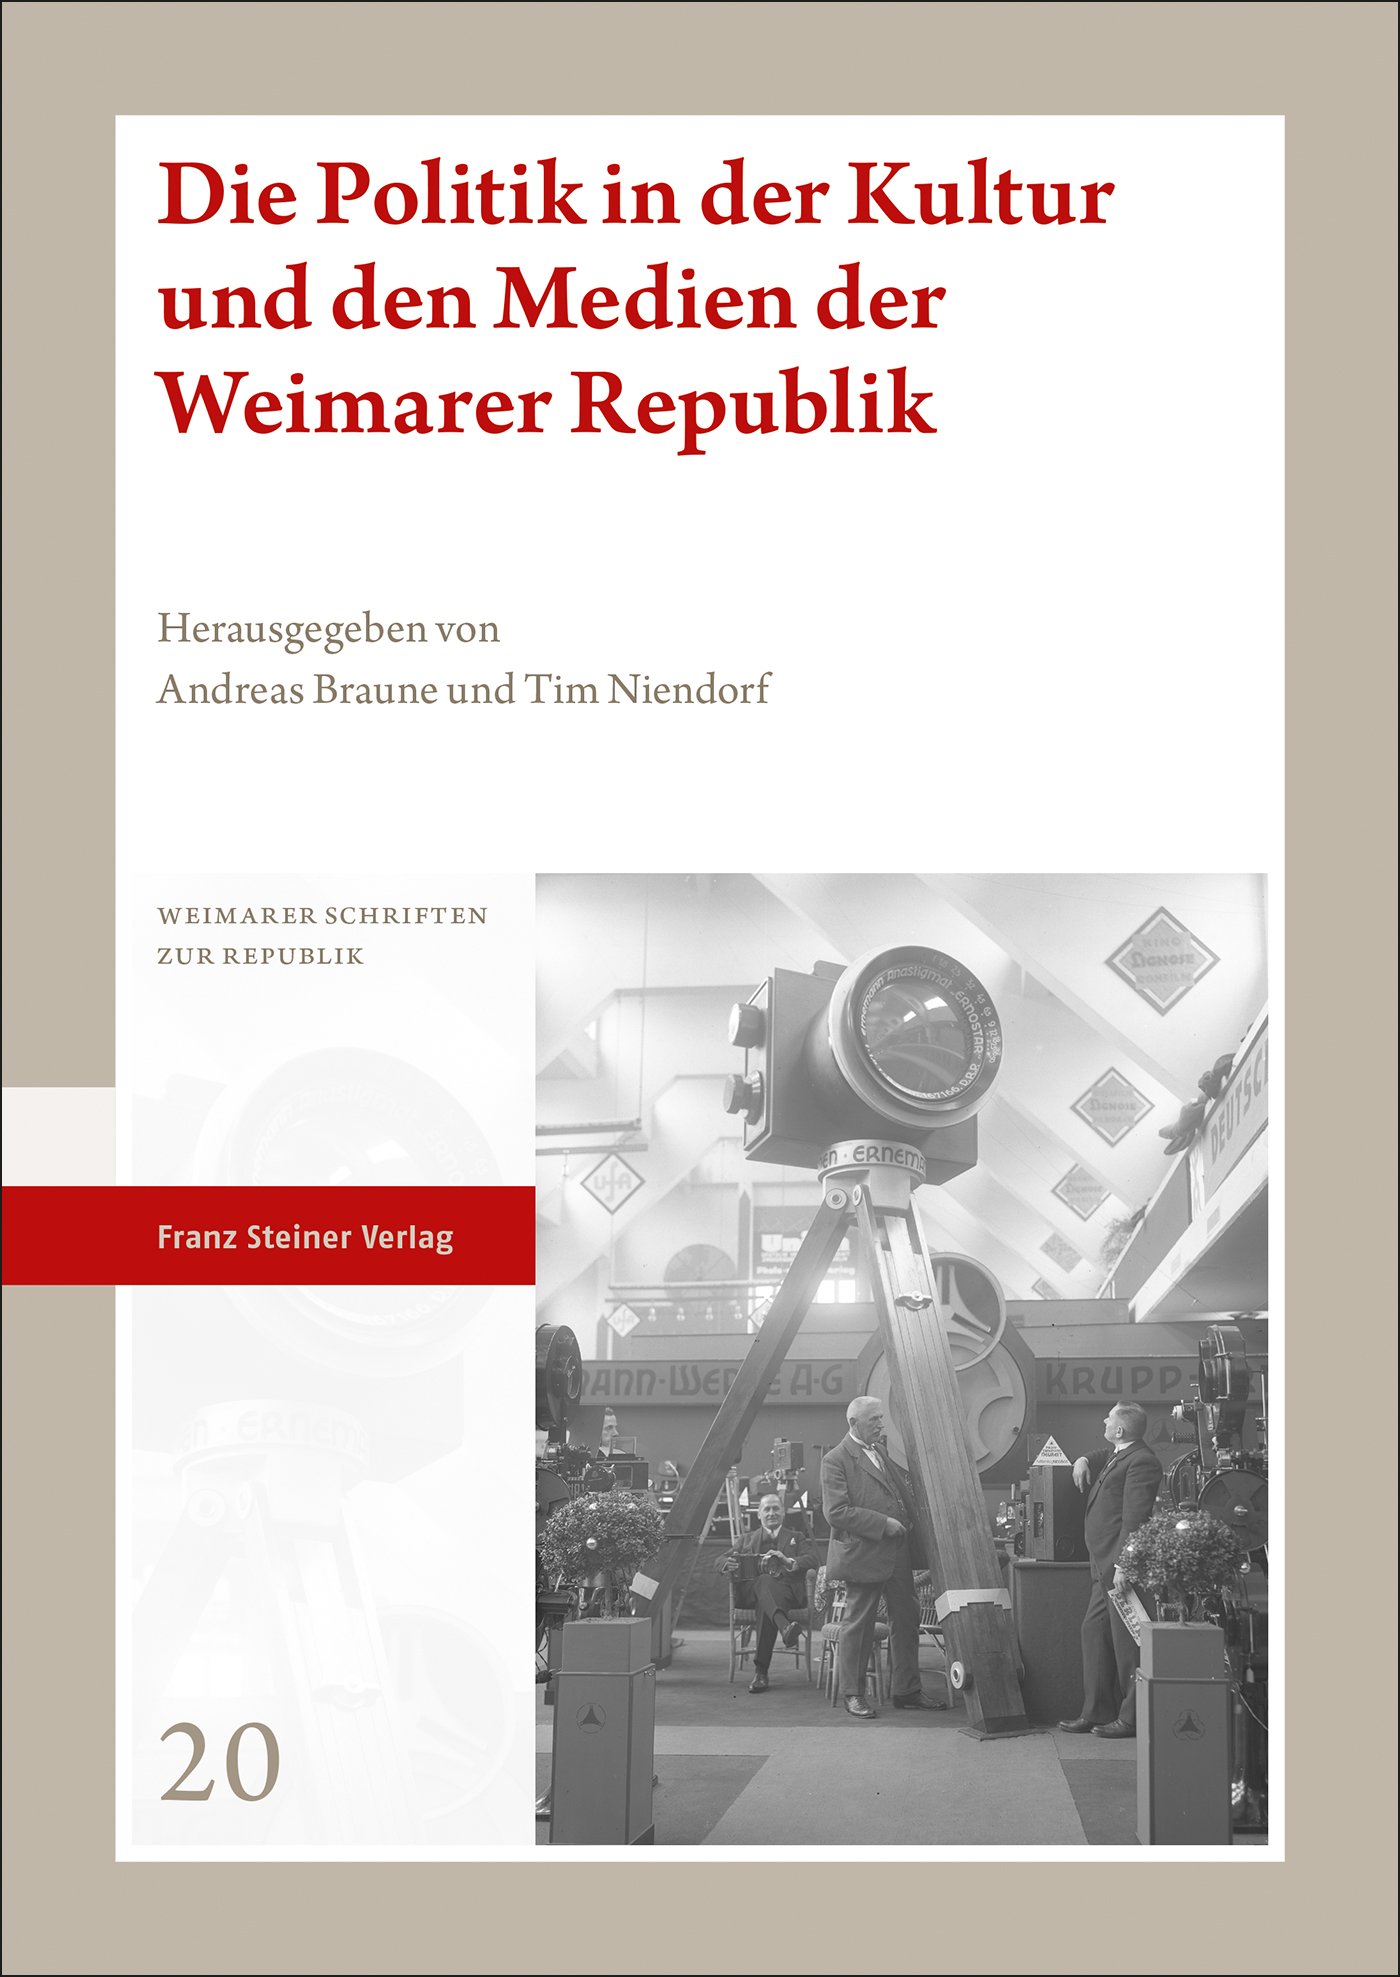 Die Politik in der Kultur und den Medien der Weimarer Republik